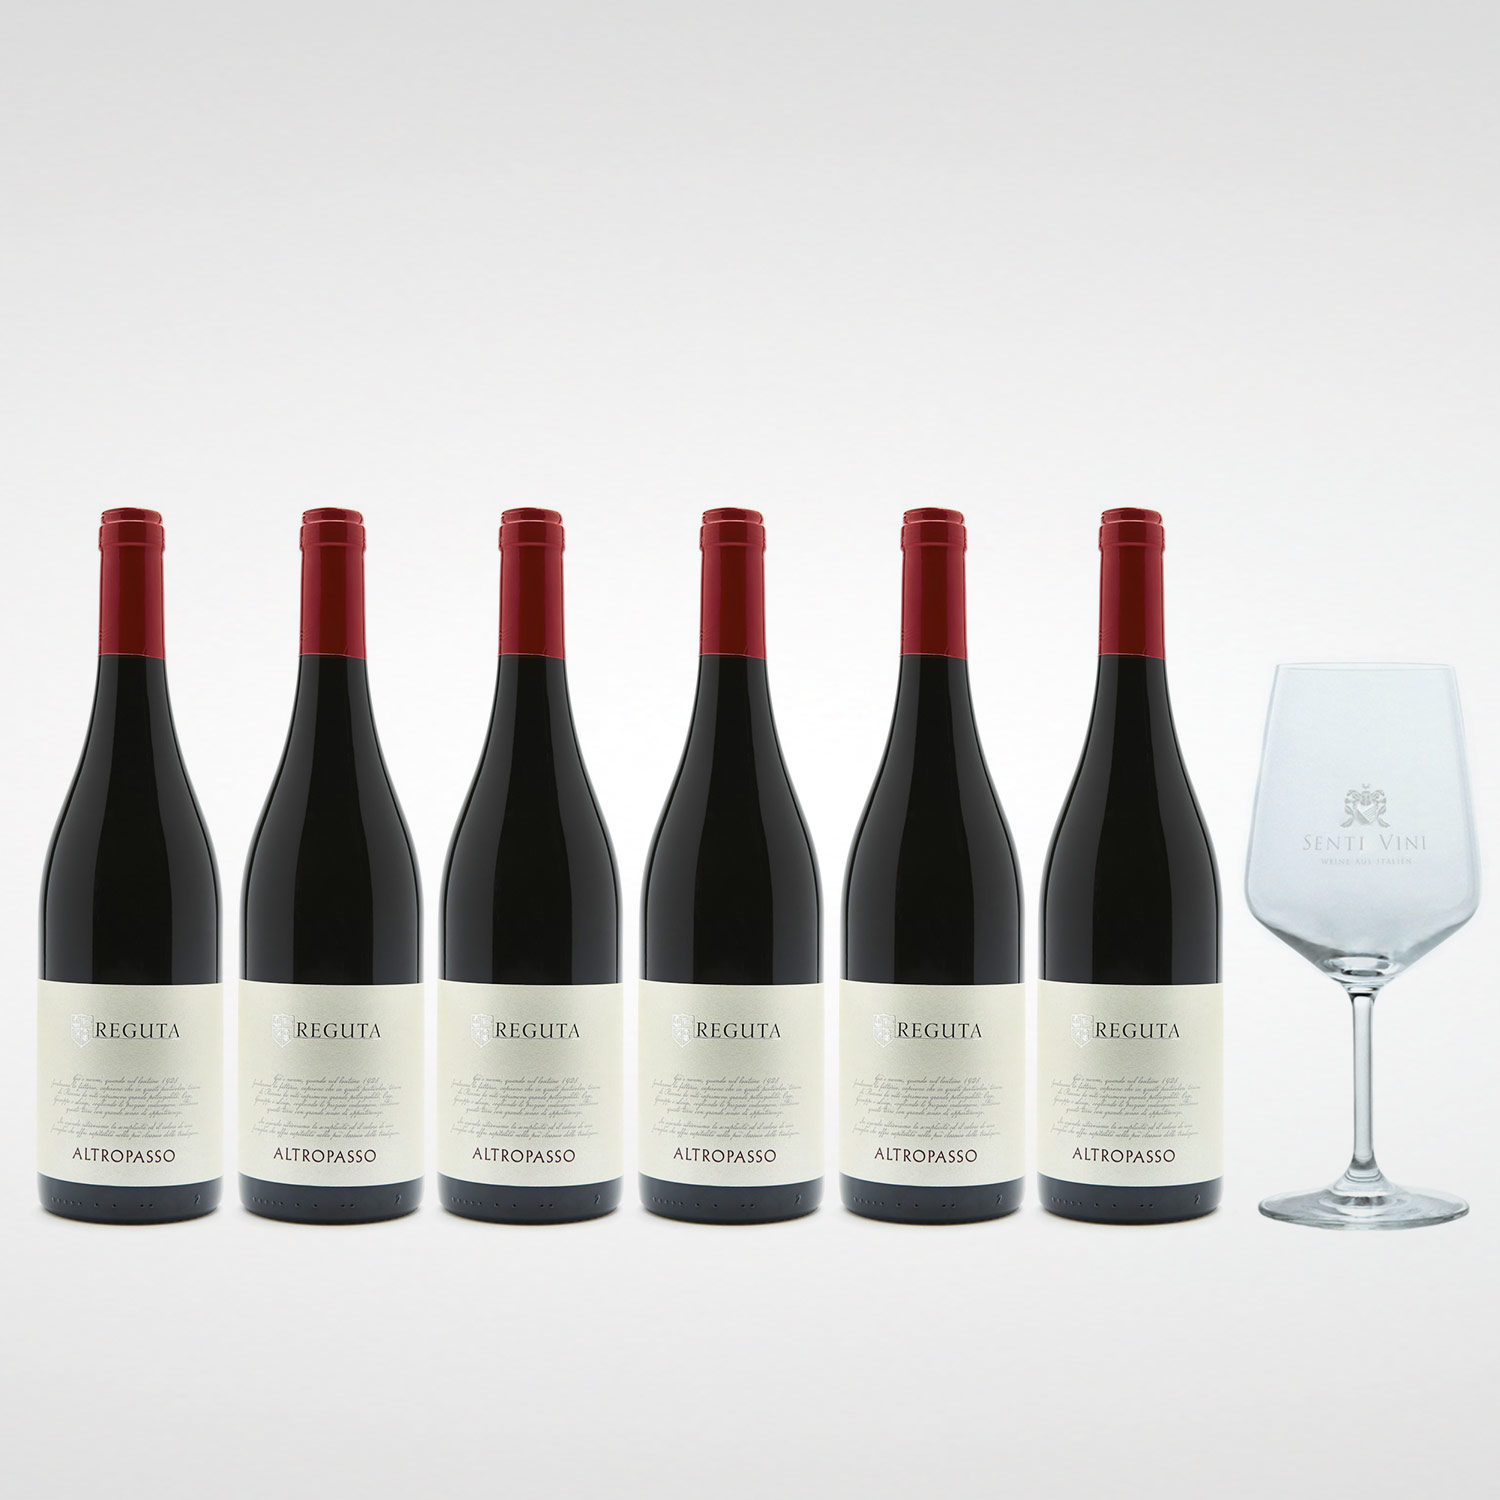 Sparpaket Reguta Giuseppe e Senti Altropasso | - Weinglas 2020 Weine Rosso delle Venezie IGP aus Vini x Spiegelau Vini Luigi 0,75l) (6 bei Italien Senti kaufen mit Online